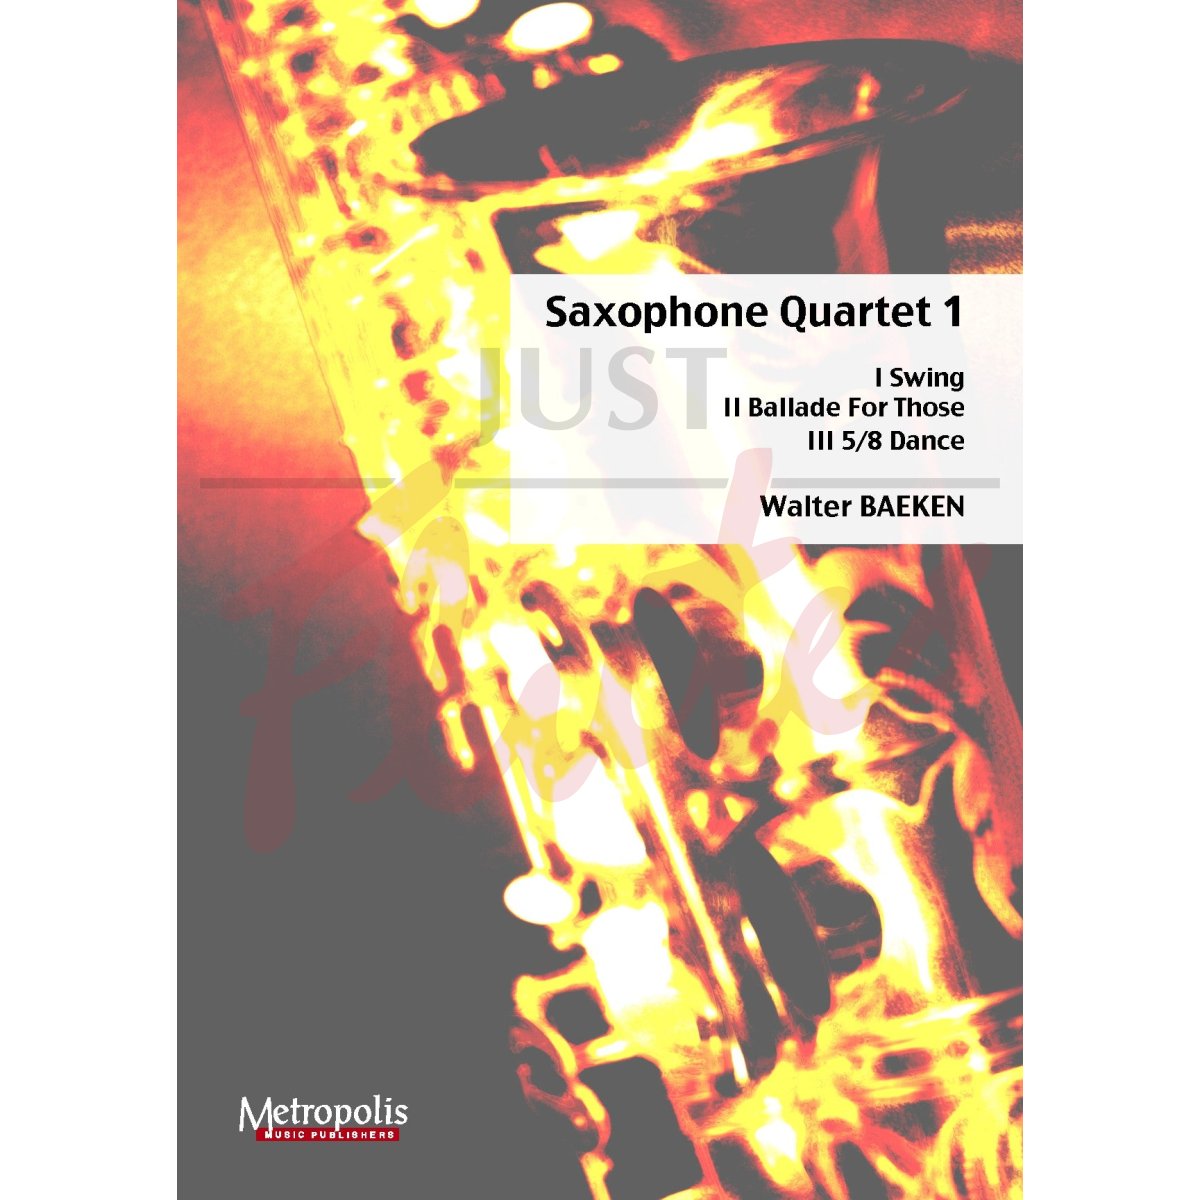 Saxophone Quartet 1